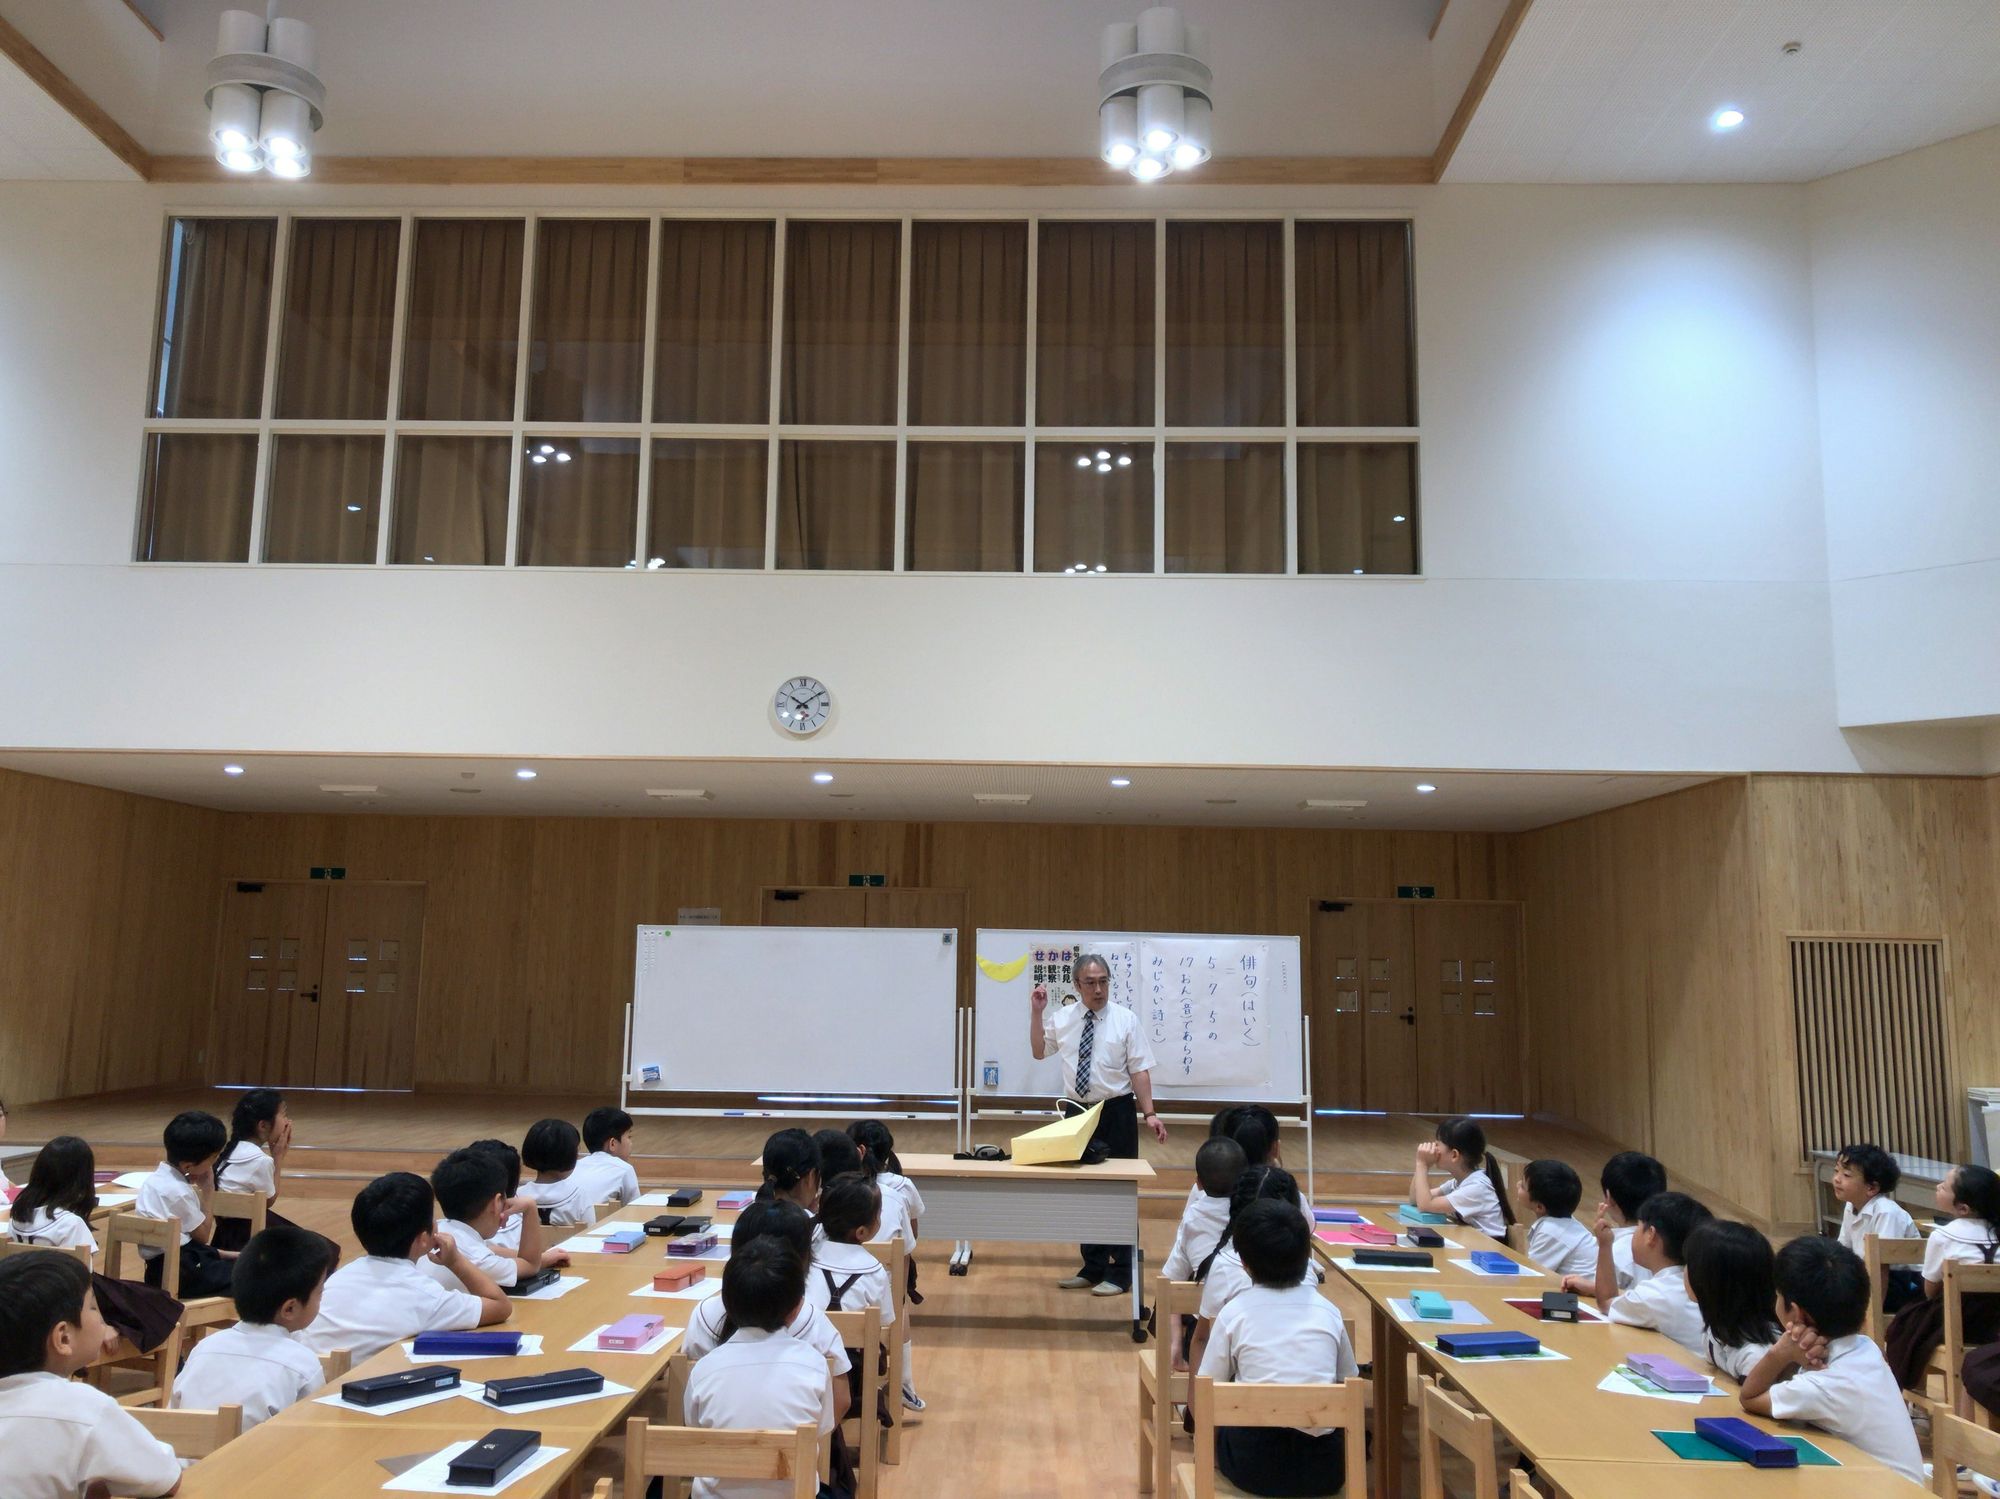 俳句教室